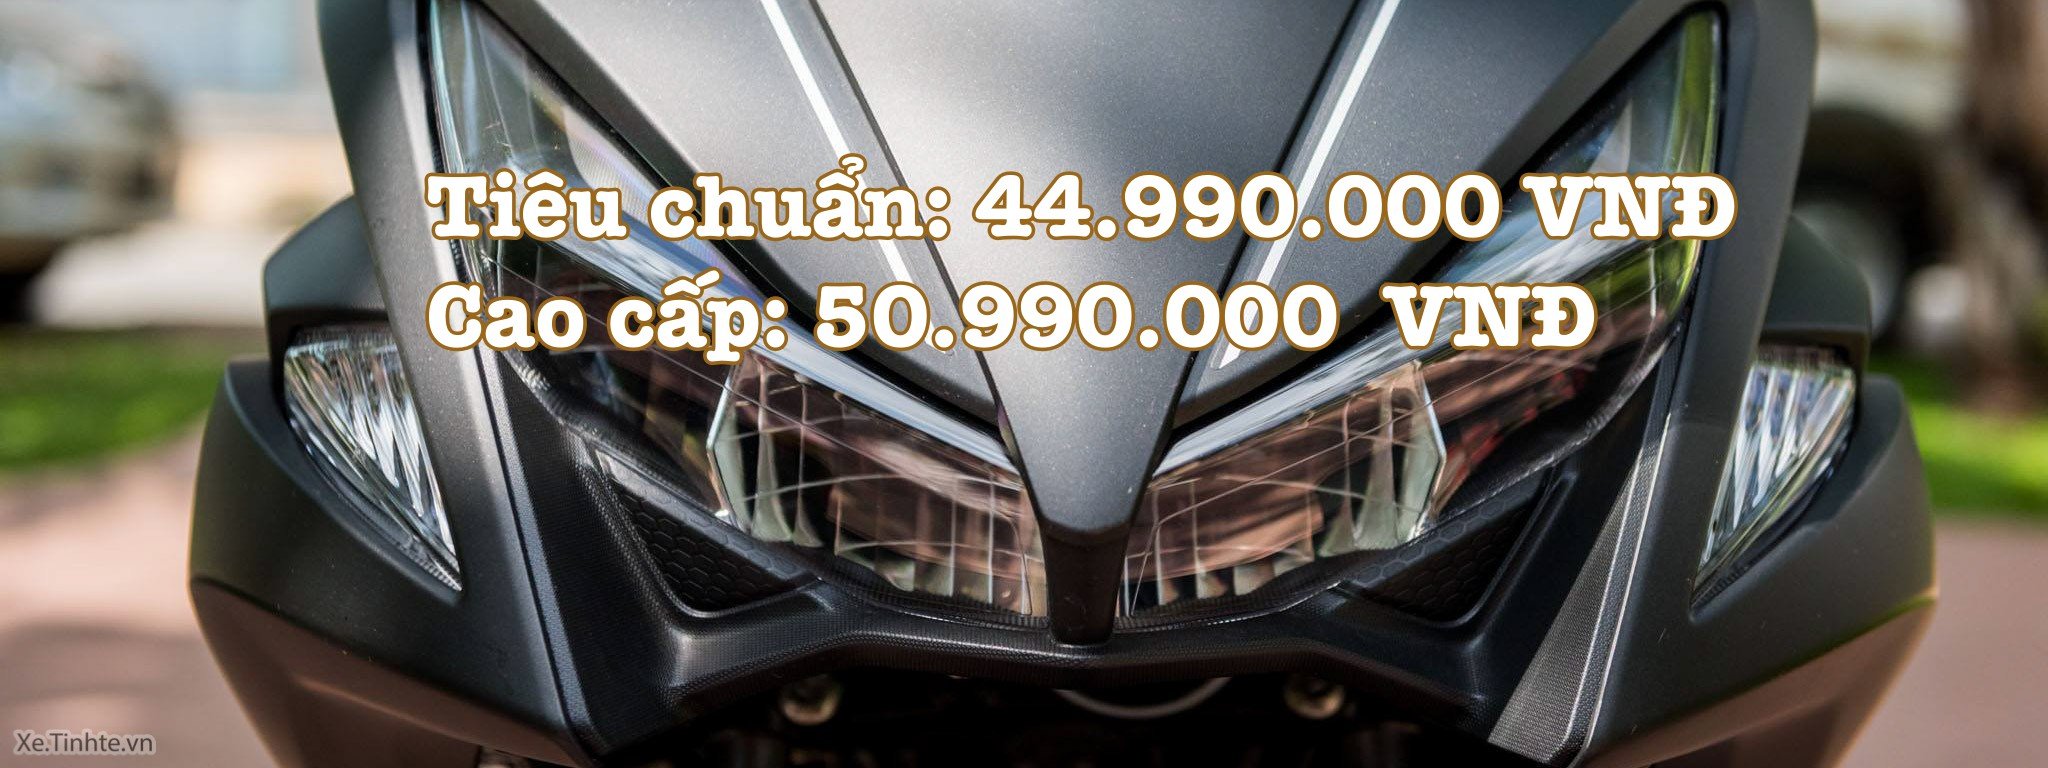 Rò rỉ giá bán Yamaha NVX - Bản tiêu chuẩn: 44,990 triệu; Bản cao cấp: 50,990 triệu